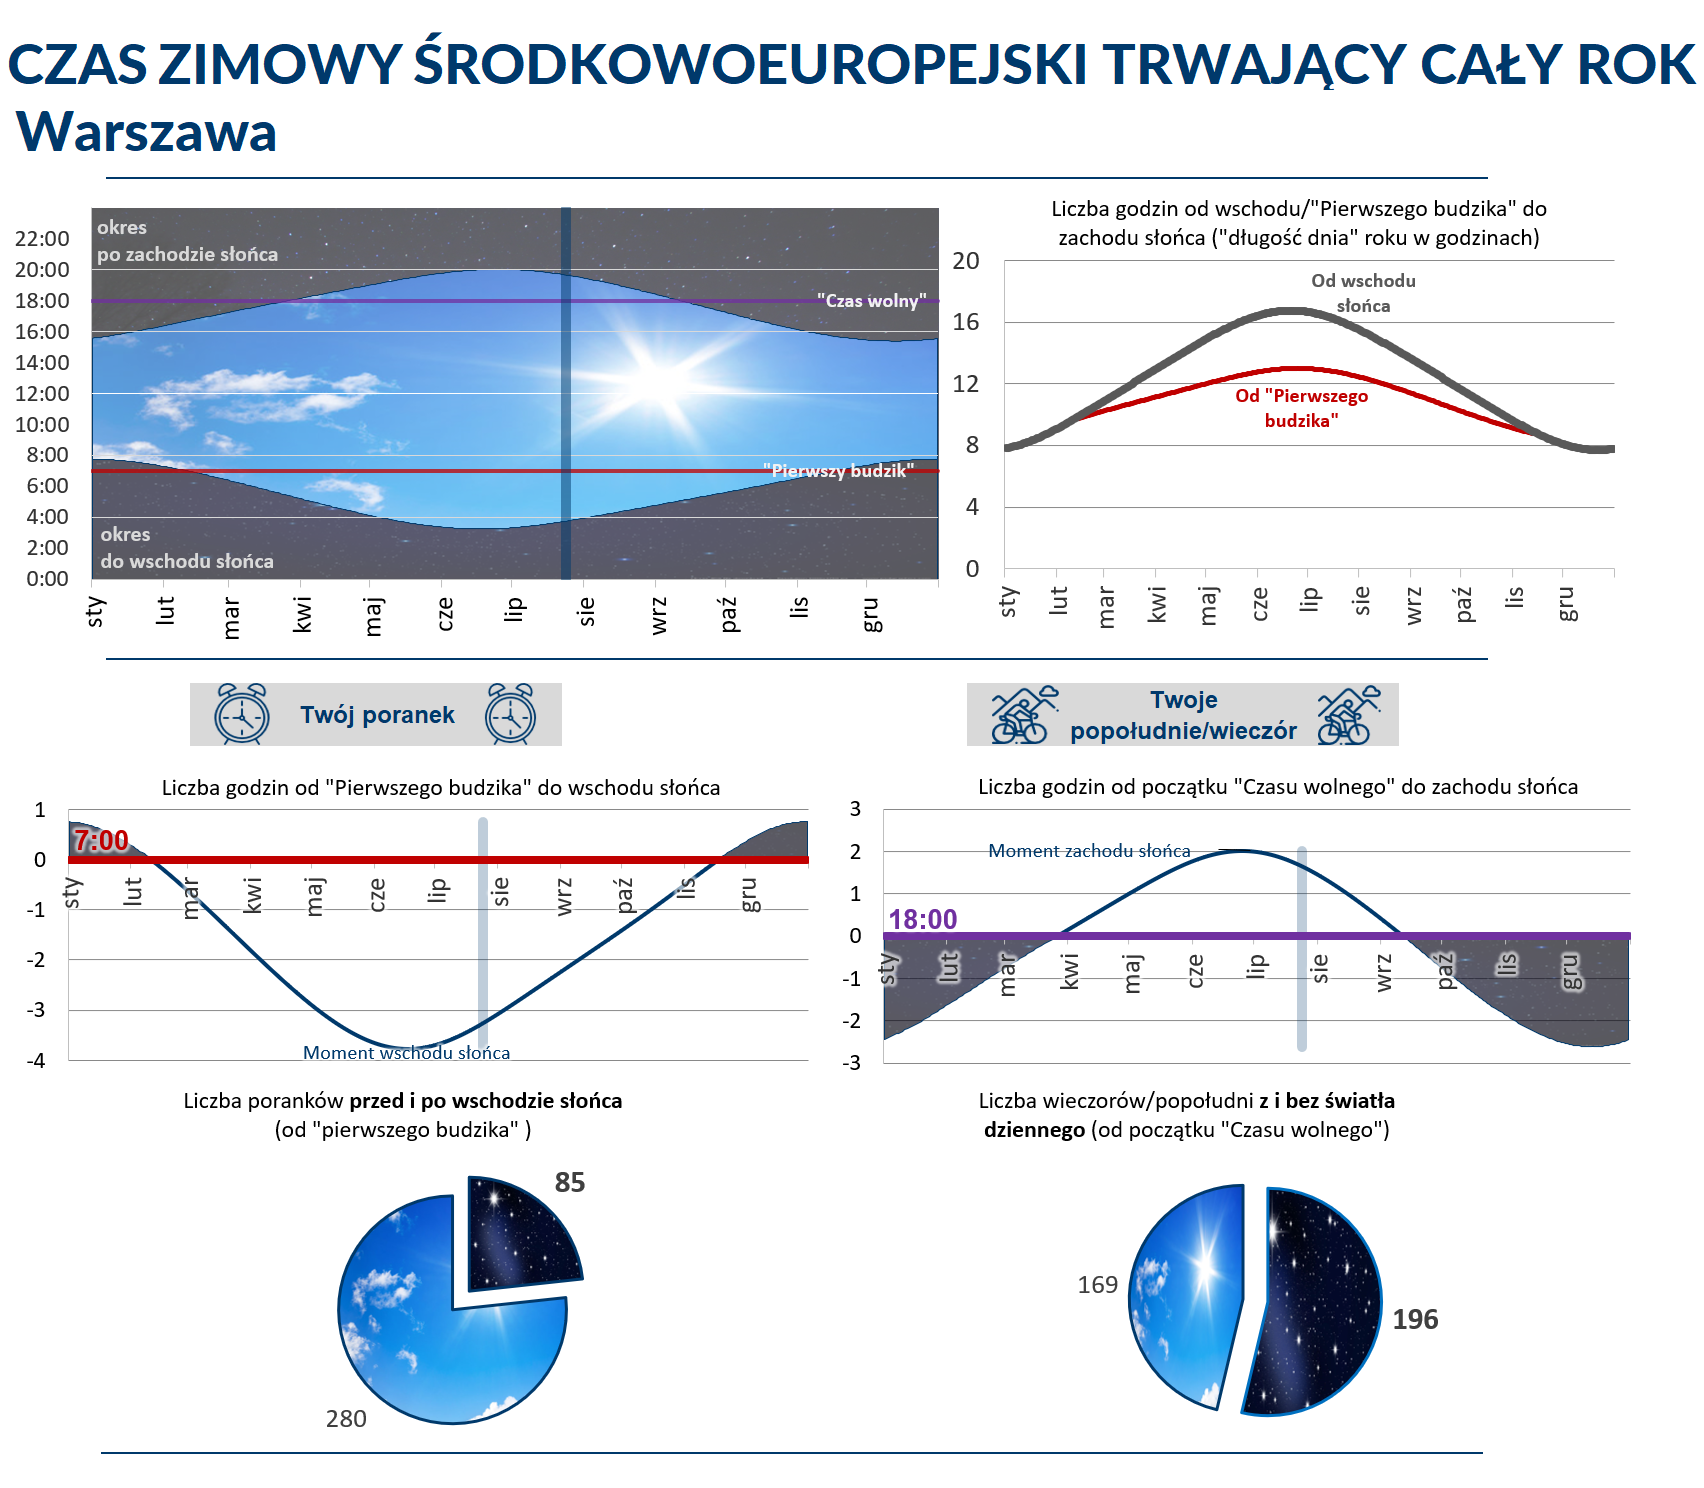 Grafika z wykresami przedstawiającymi czas zimowy środkowoeuropejski dla Warszawy